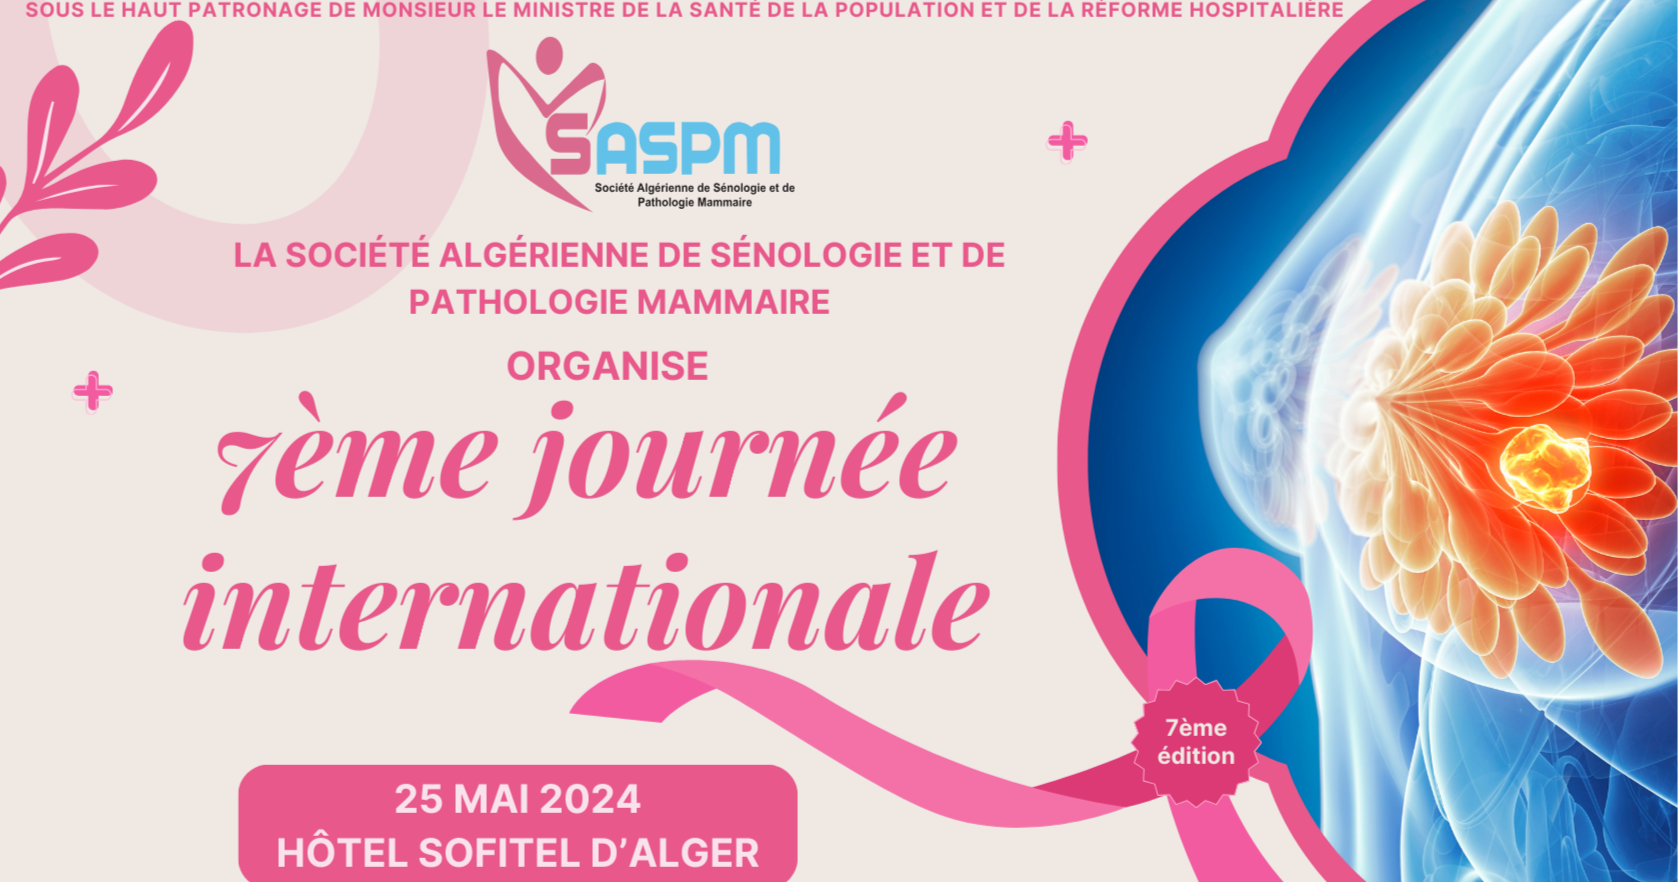 7ème journée internationale de la Société Algérienne de Sénologie et De Pathologie Mammaire (SASPM) cover image